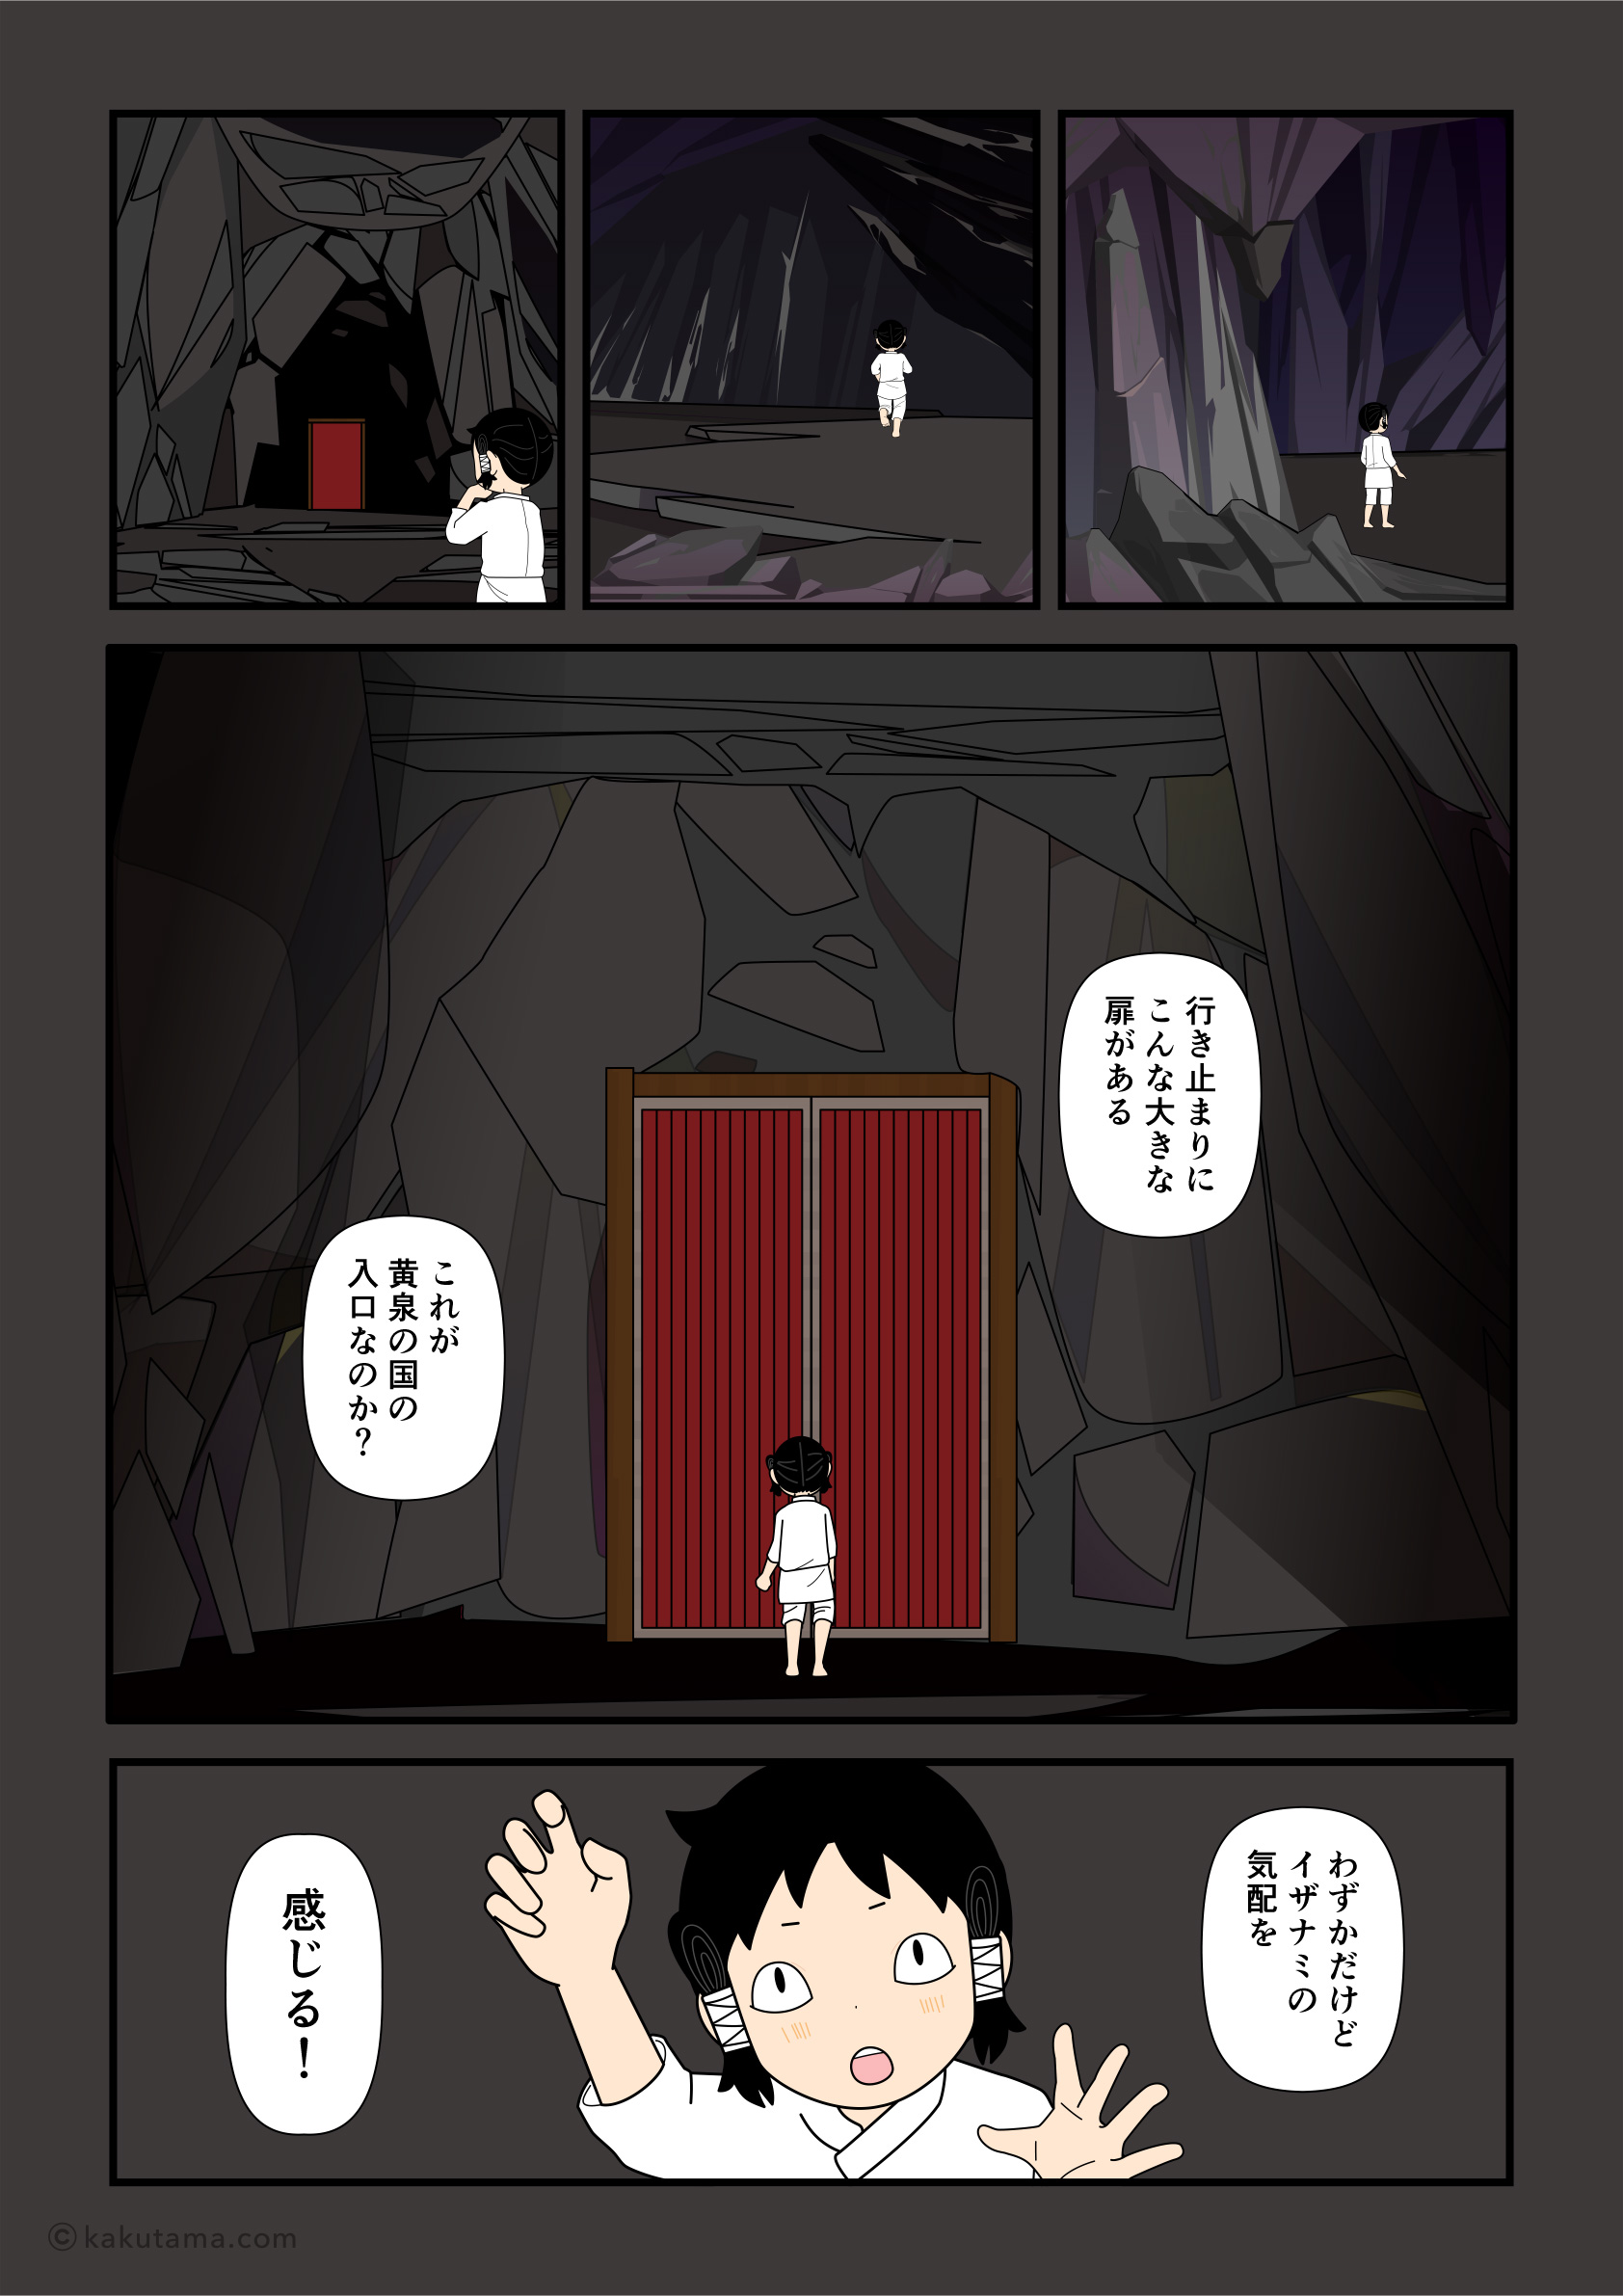 黄泉平坂の行き止まり扉があるのを見るイザナギの漫画